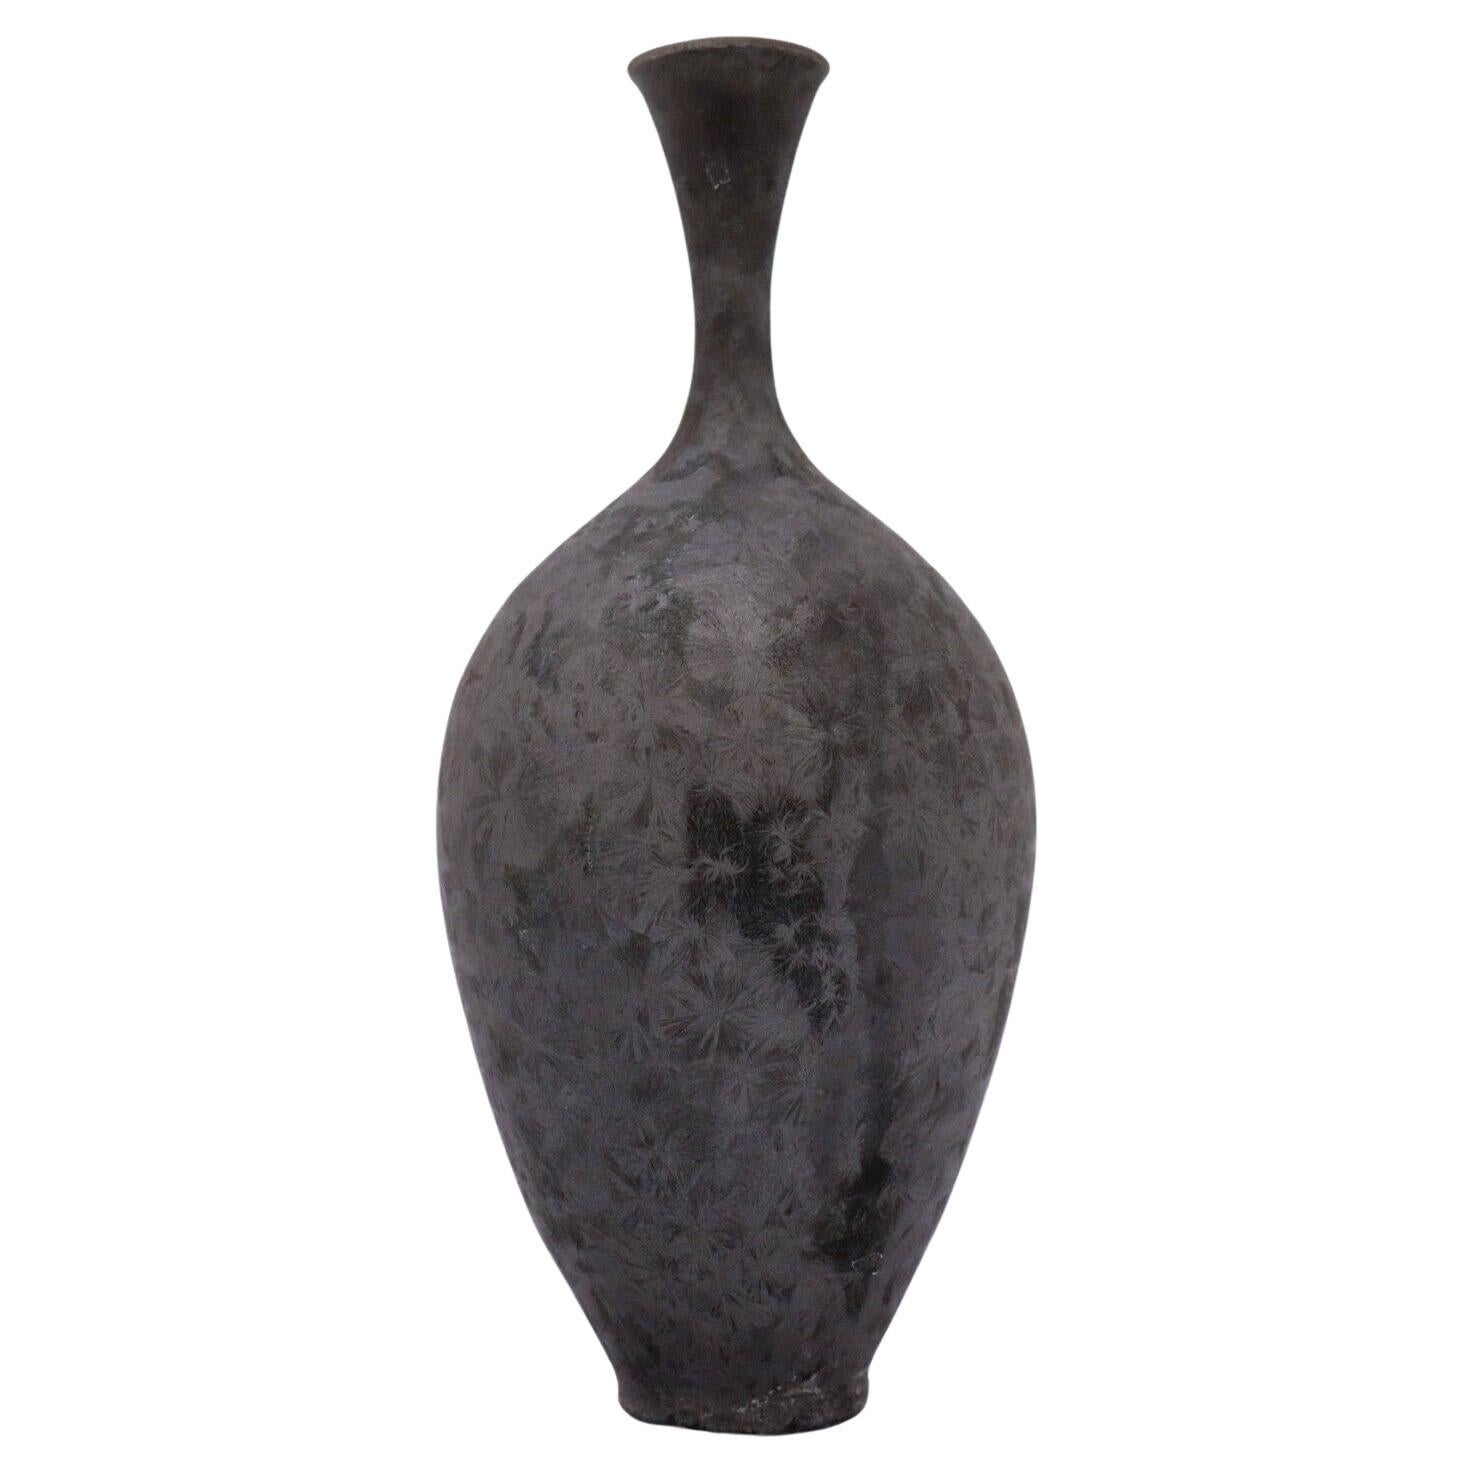 Vase Matte Dark Gray Crystalline Glaze Isak Isaksson Contemporary Sweden Ceramic